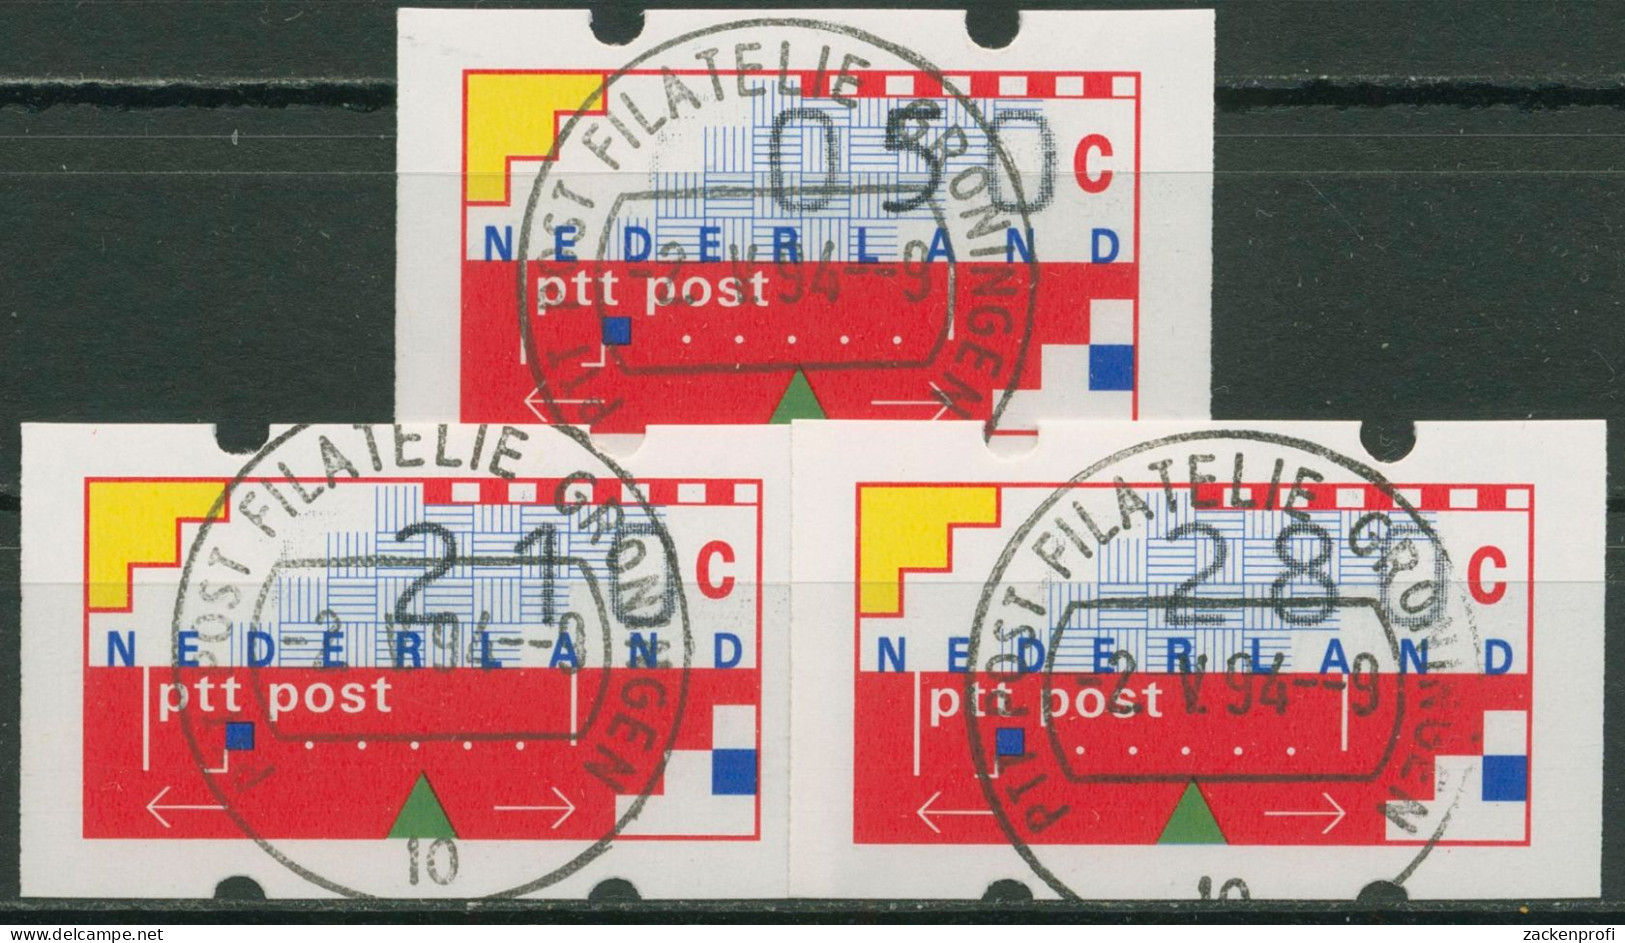 Niederlande ATM 1989 Graphik, Verdsandstellensatz ATM 1 VS 6 Gestempelt - Used Stamps